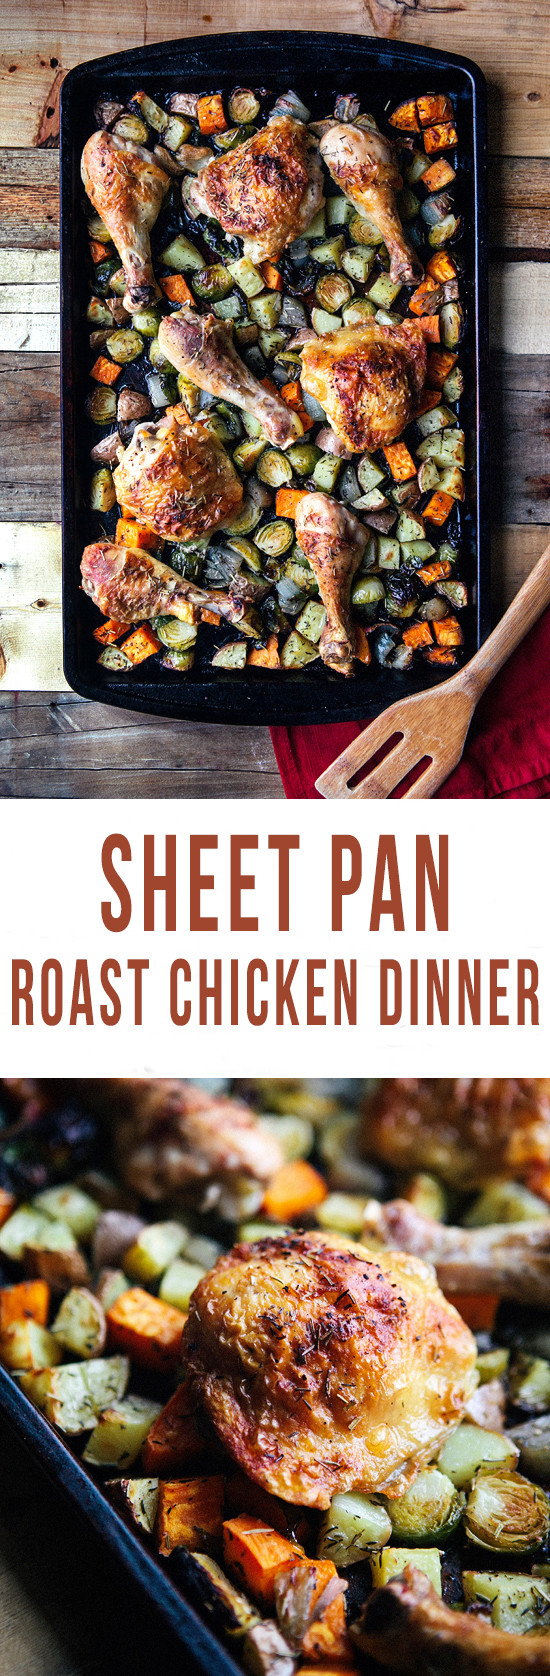 Sheet Pan Chicken Dinners
 Sheet Pan Roast Chicken Dinner Some the Wiser